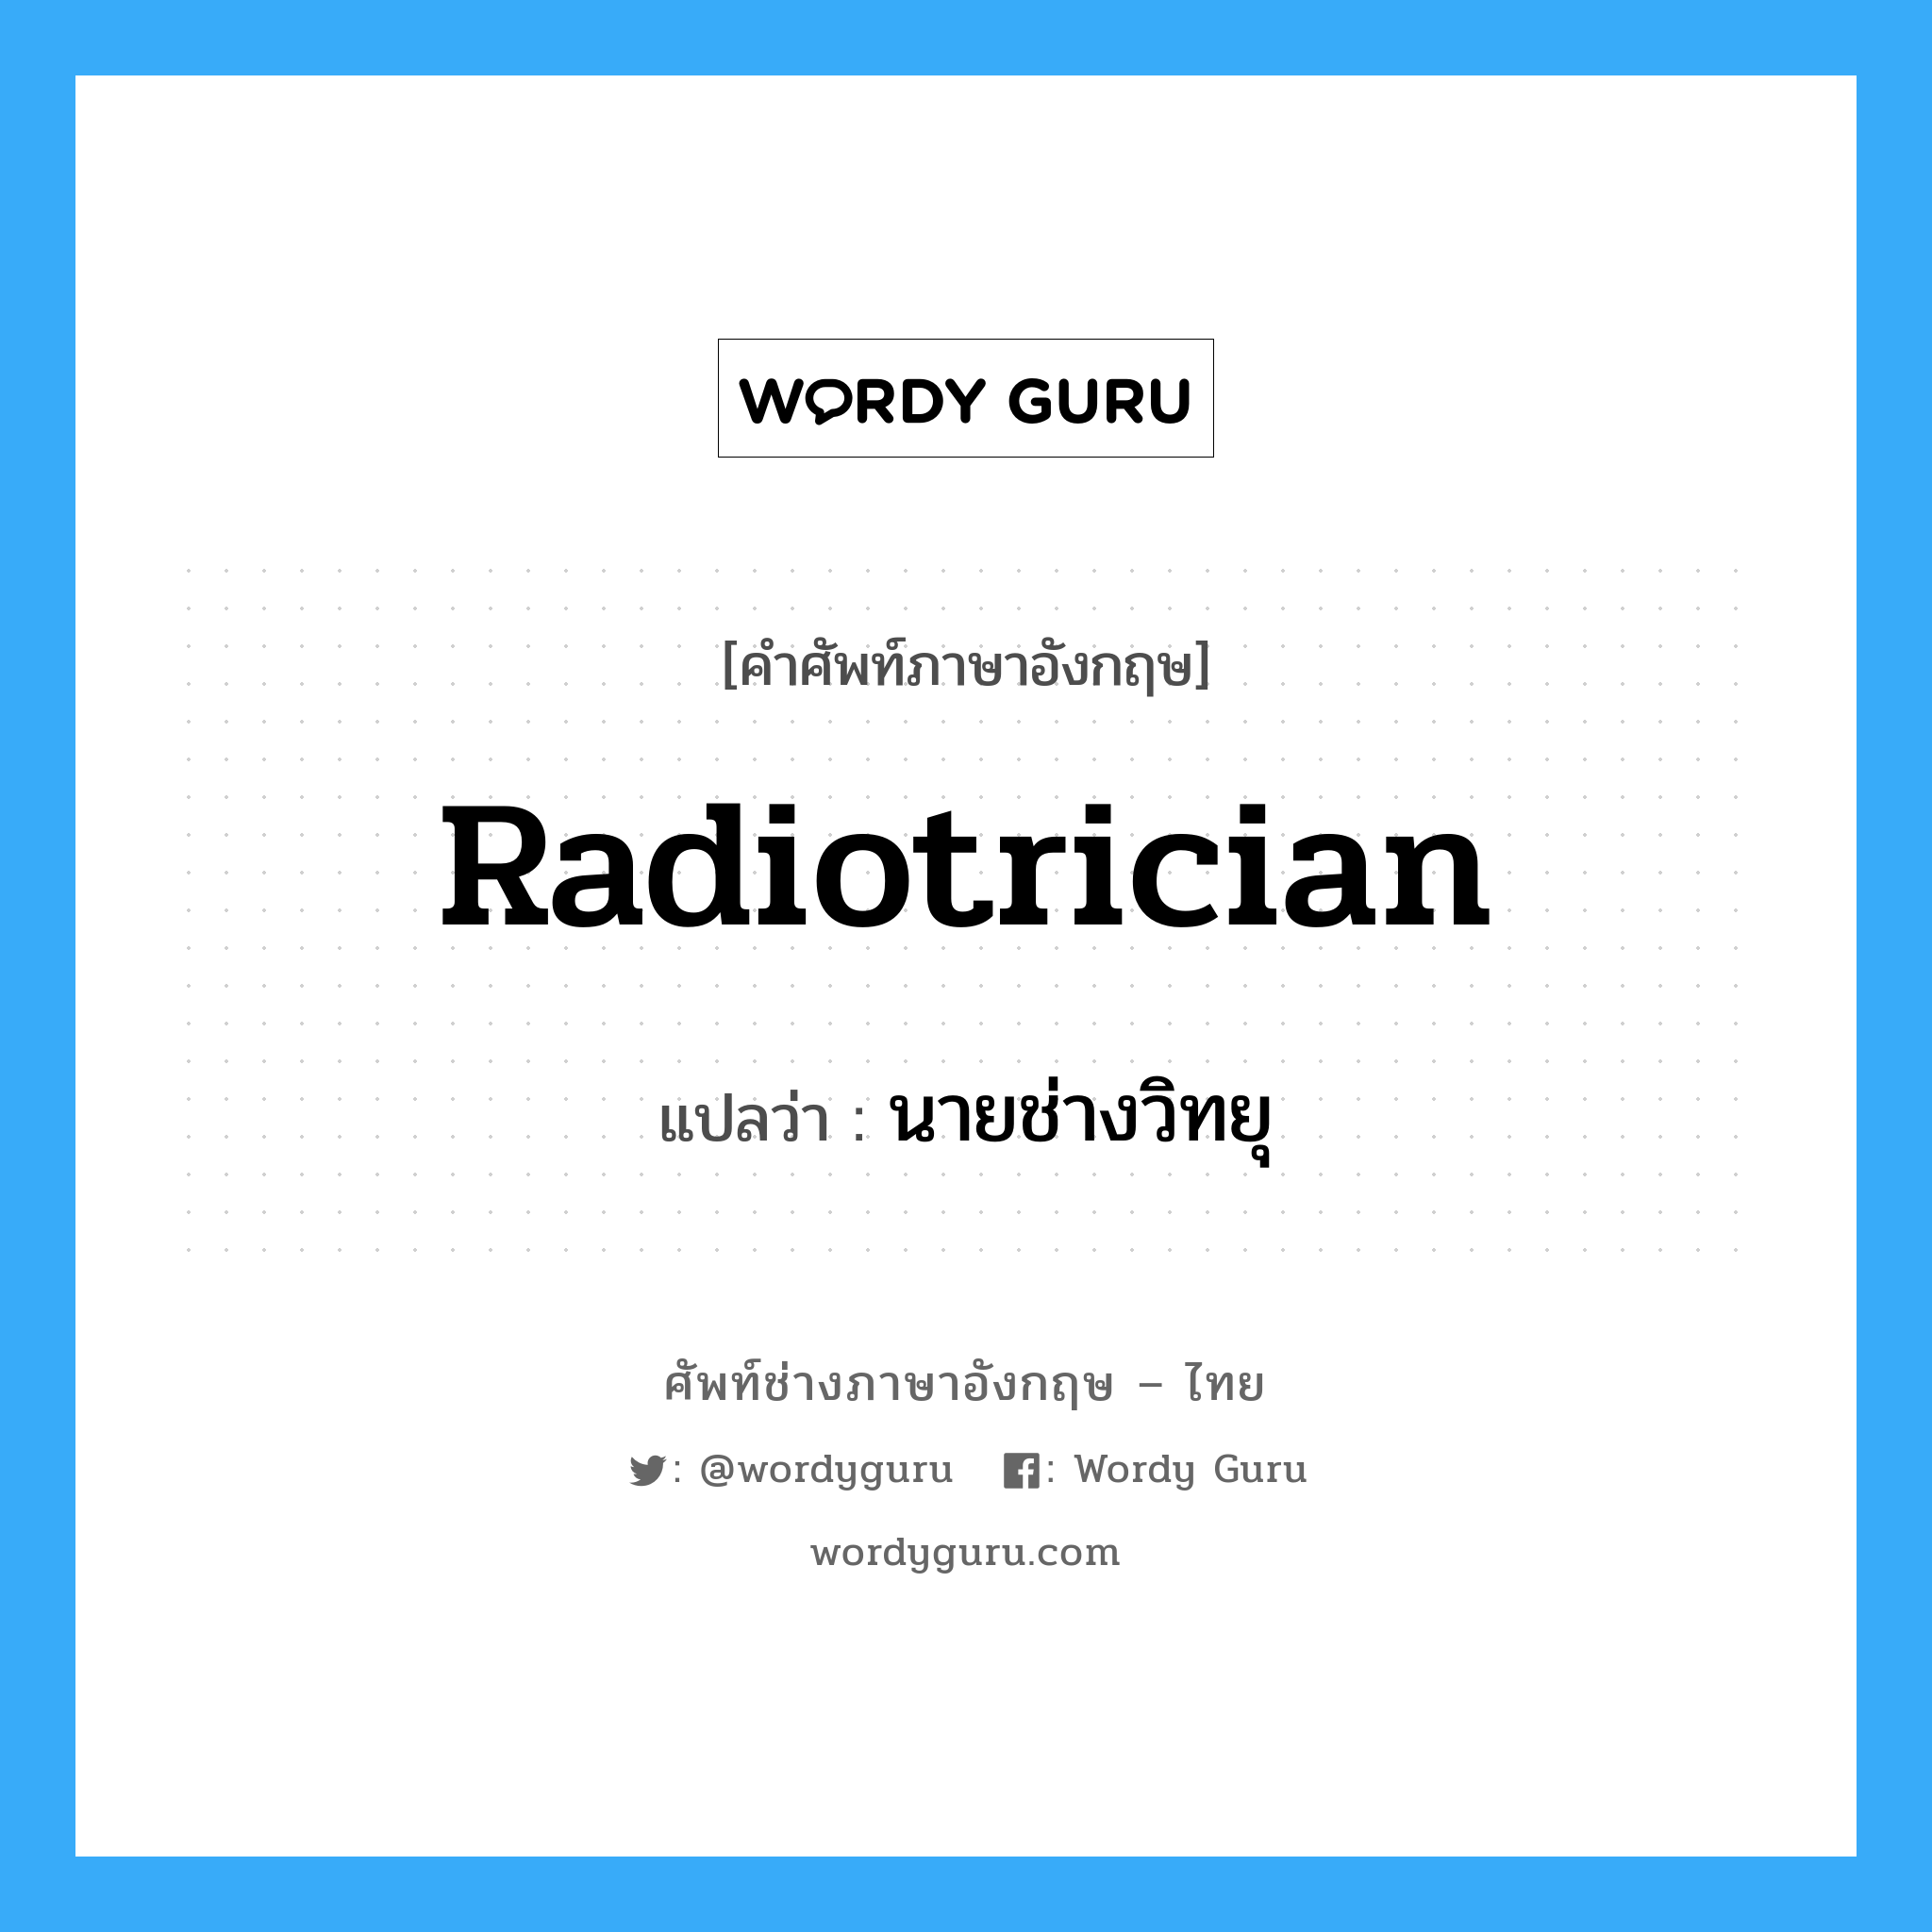 radiotrician แปลว่า?, คำศัพท์ช่างภาษาอังกฤษ - ไทย radiotrician คำศัพท์ภาษาอังกฤษ radiotrician แปลว่า นายช่างวิทยุ